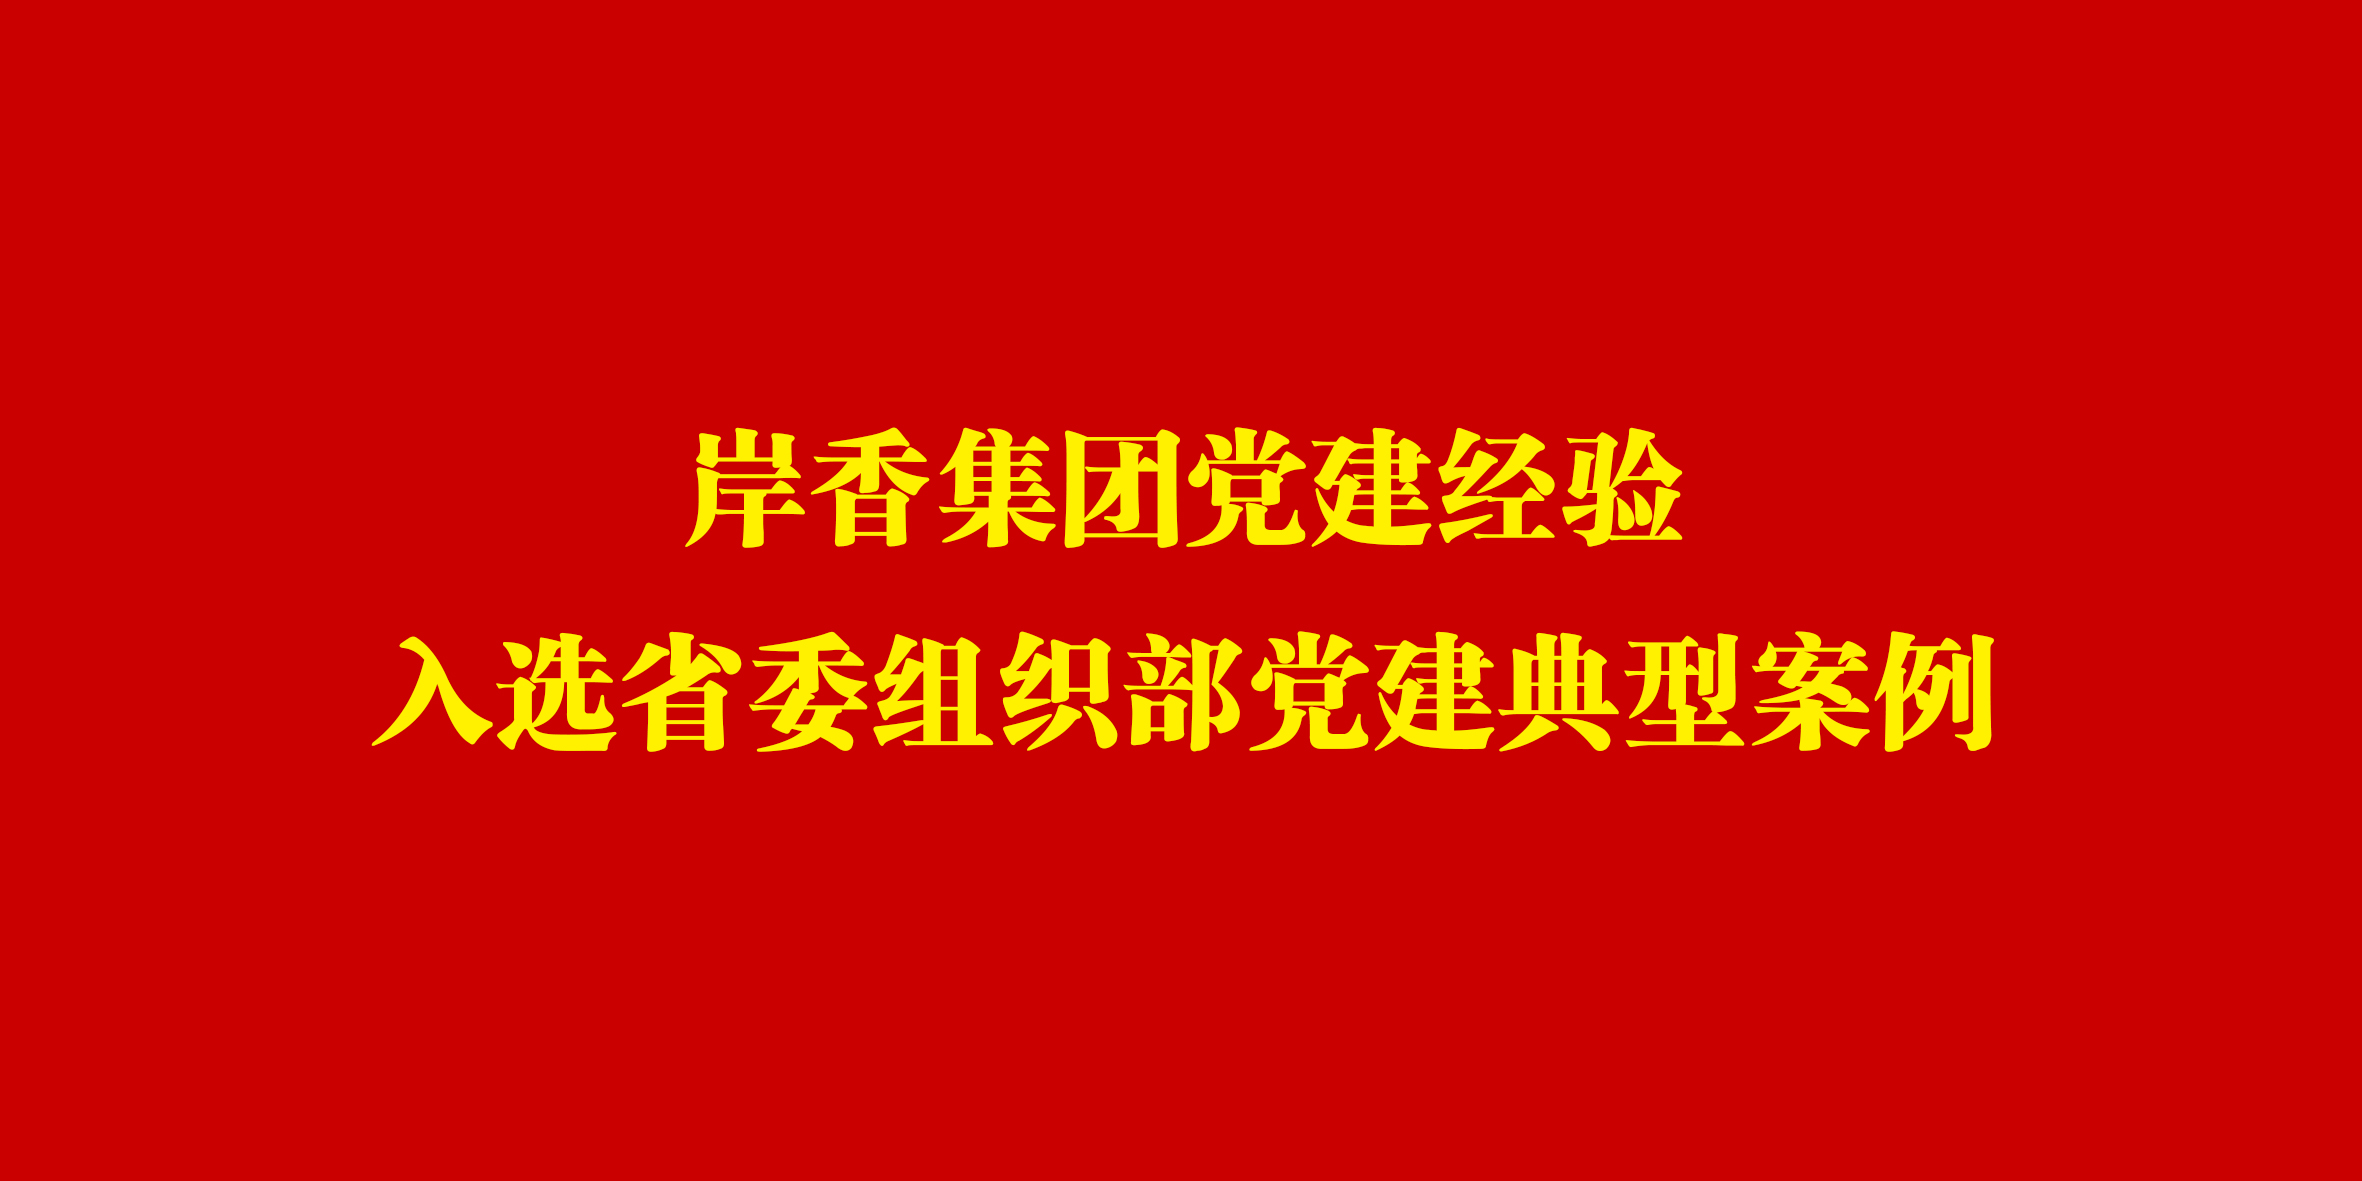 岸香集团党建经验入选省委组织部党建典型案例